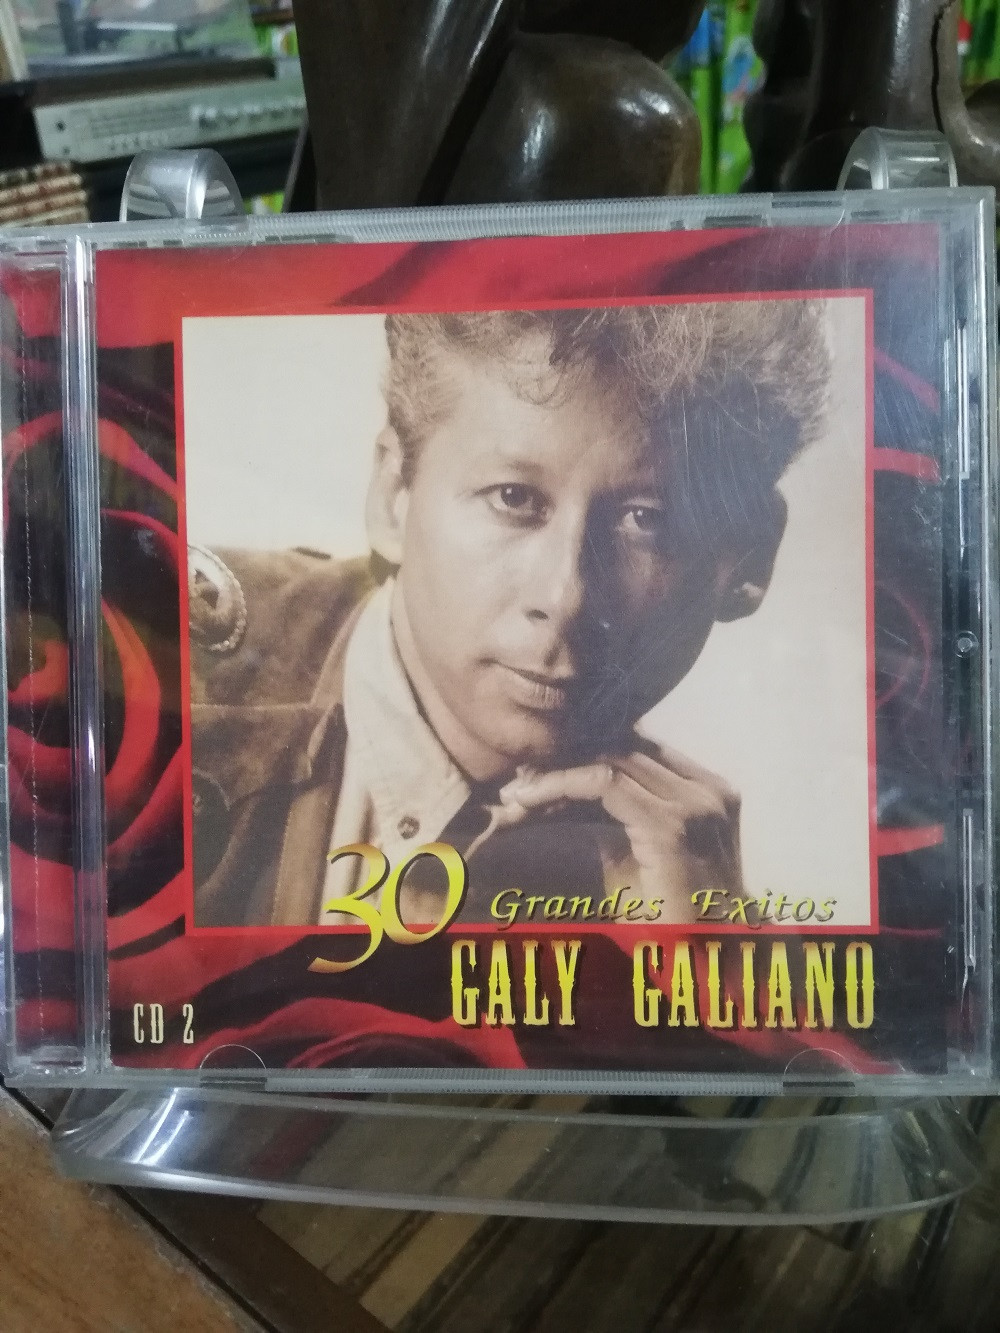 Imagen CD GALY GALIANO - 30 GRANDES EXITOS VOL. 2 1